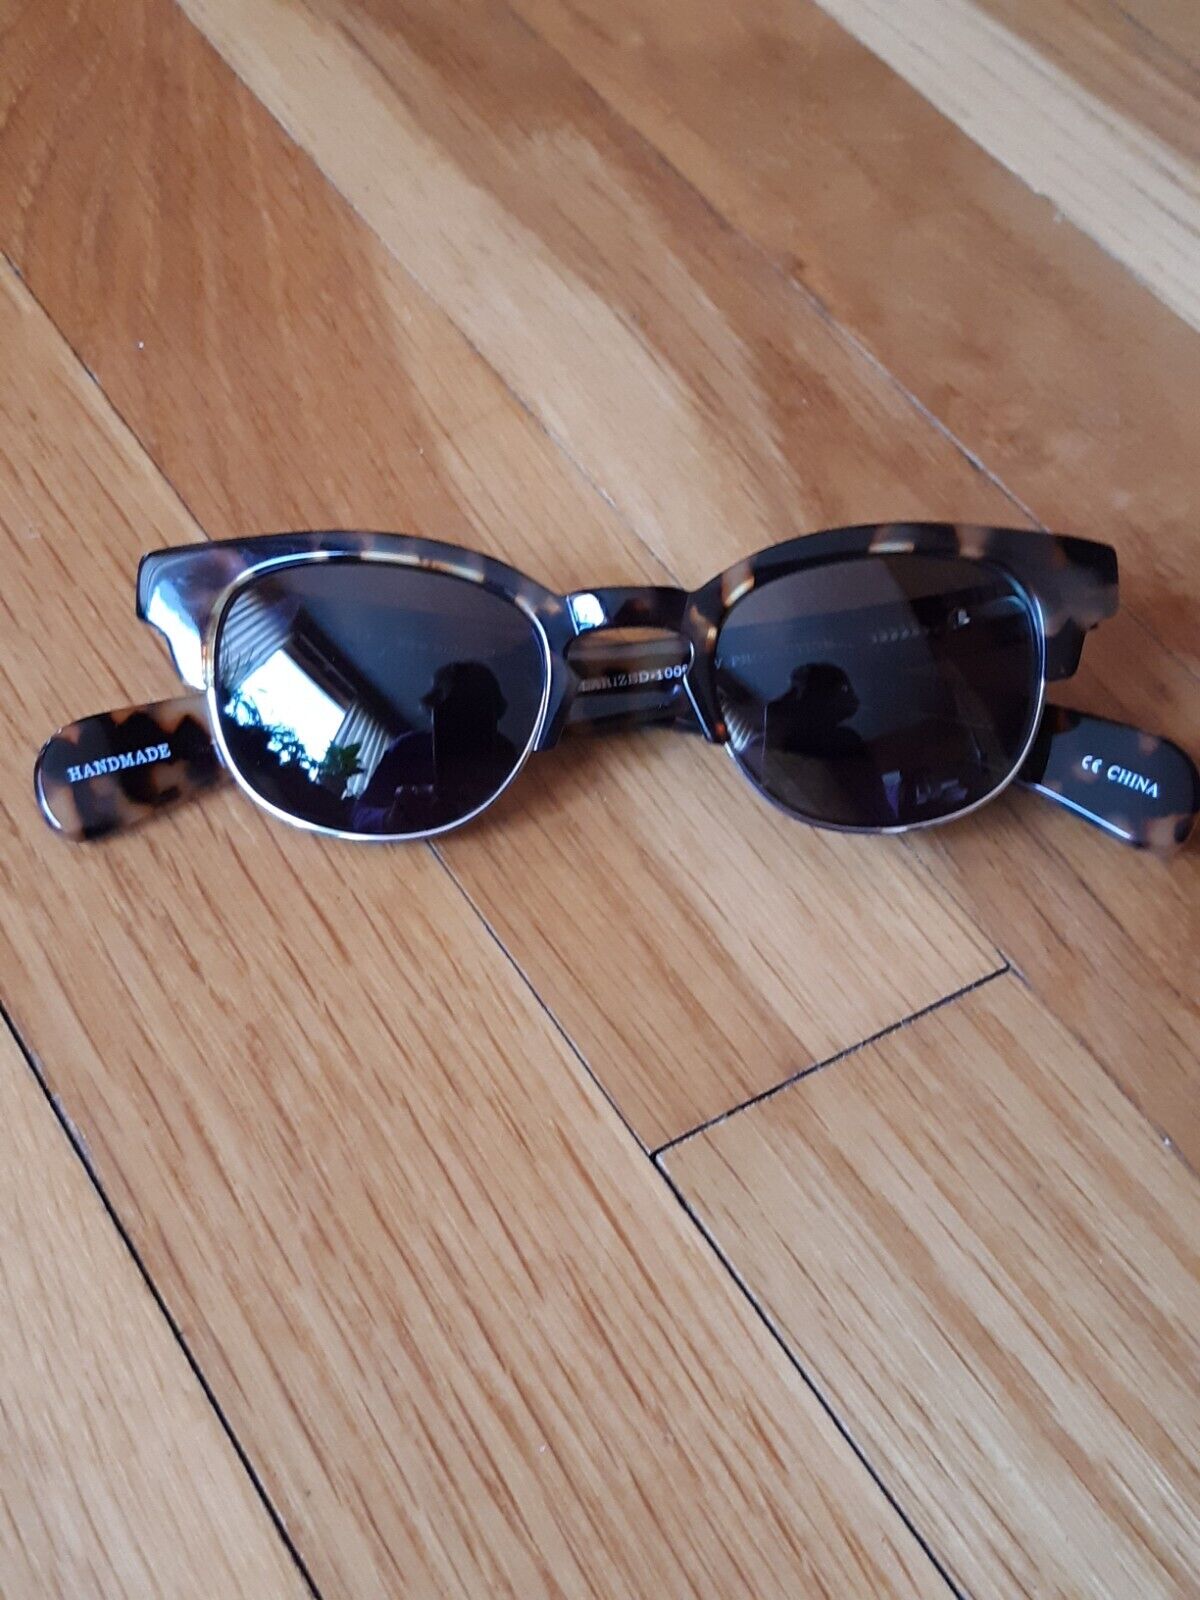 eye-bobs Nudnick 124 Sunglasses (Polarized) - image 1